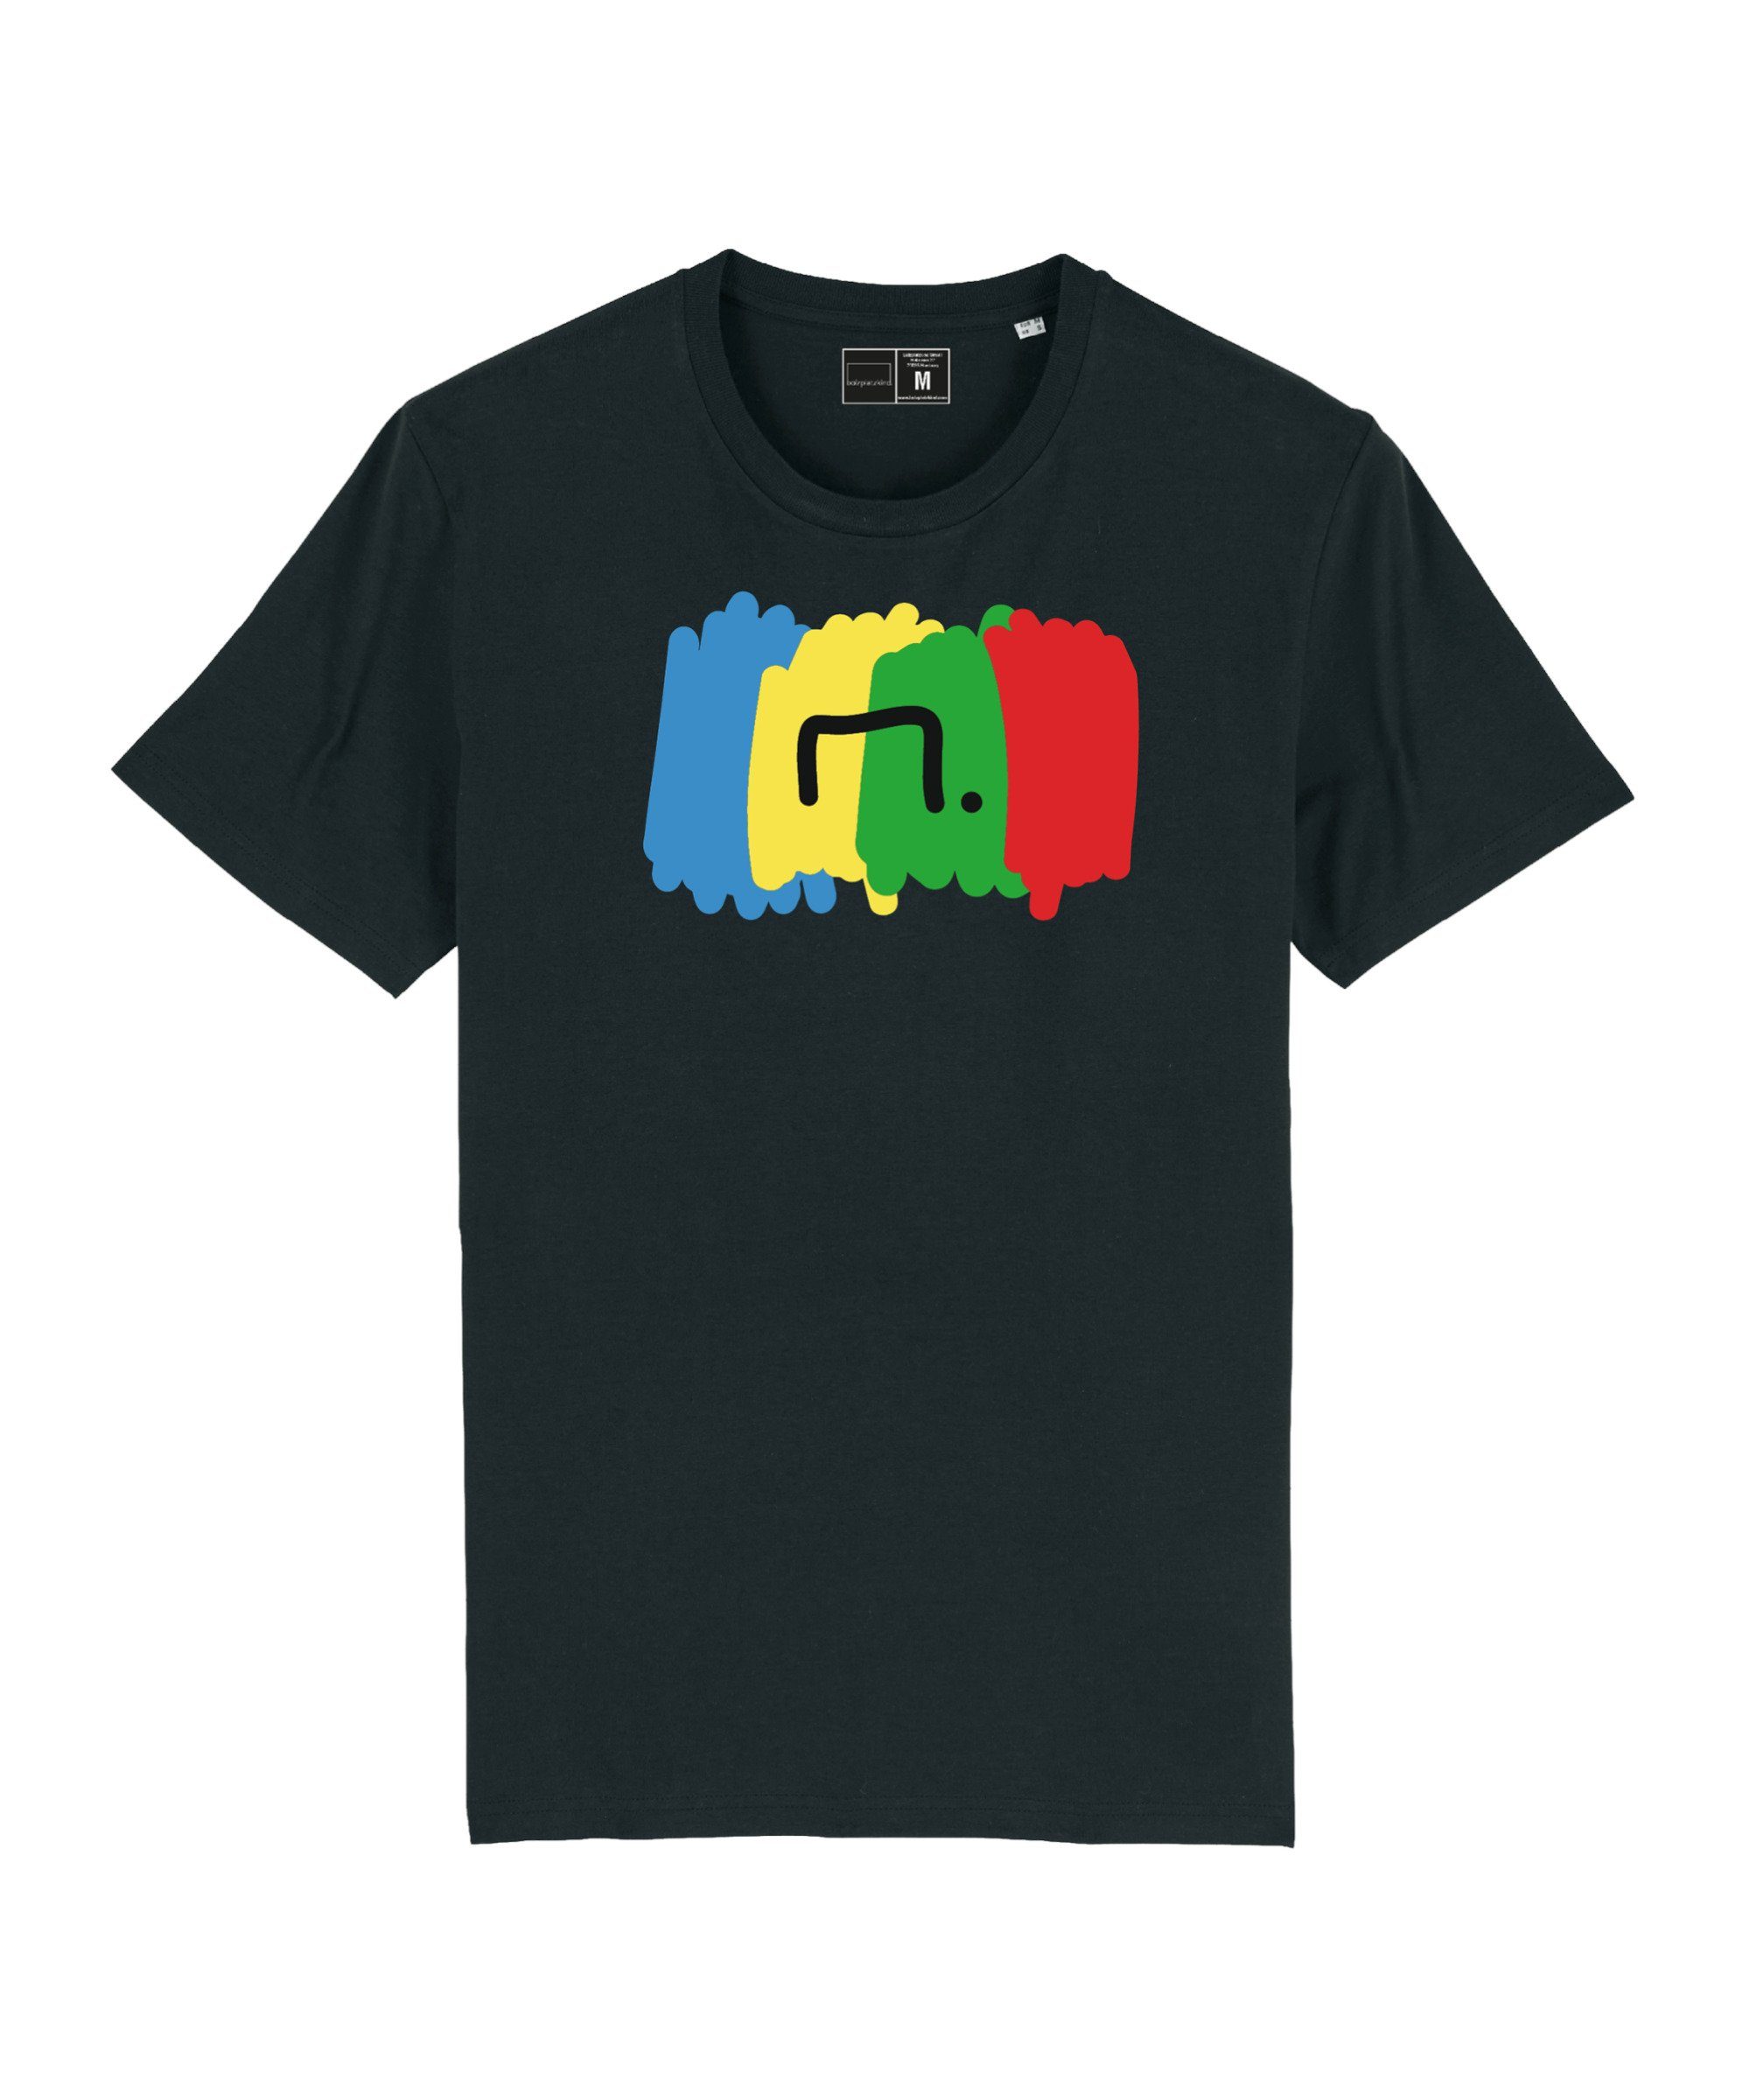 Bolzplatzkind T-Shirt "Free" T-Shirt Nachhaltiges Produkt schwarz